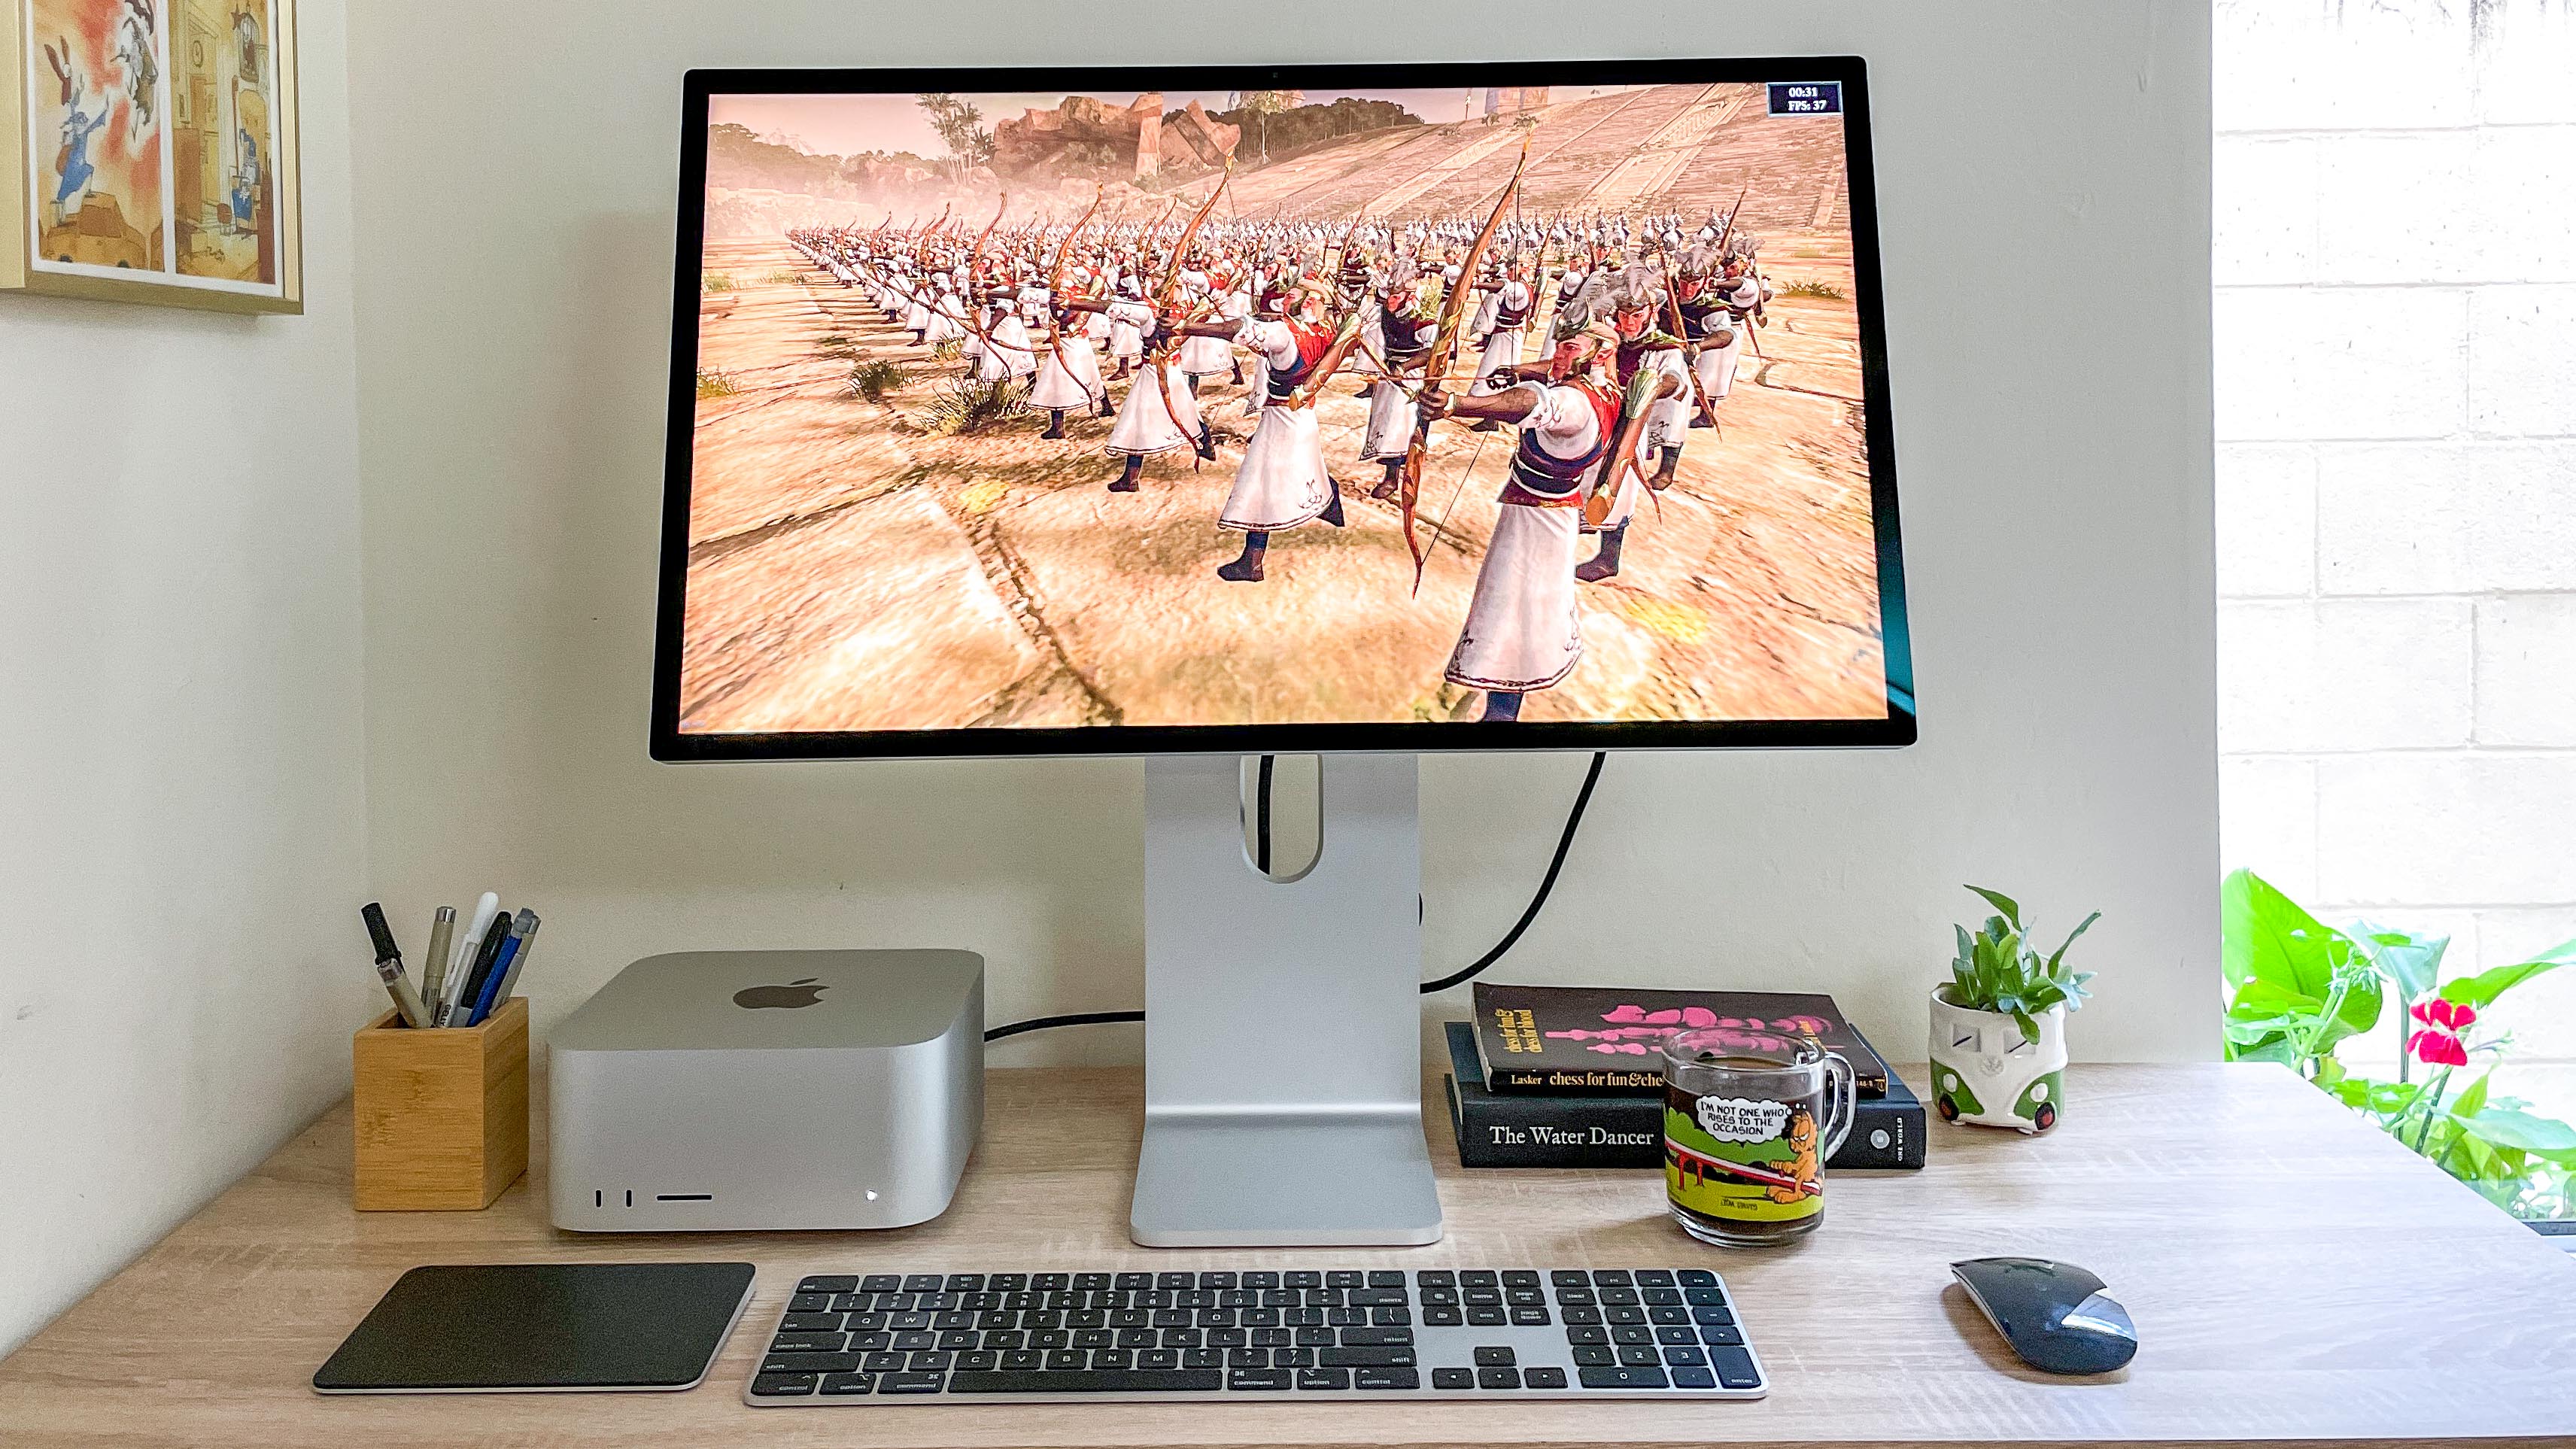 Mac Studio en el escritorio mostrando Total War: Warhammer II ejecutándose